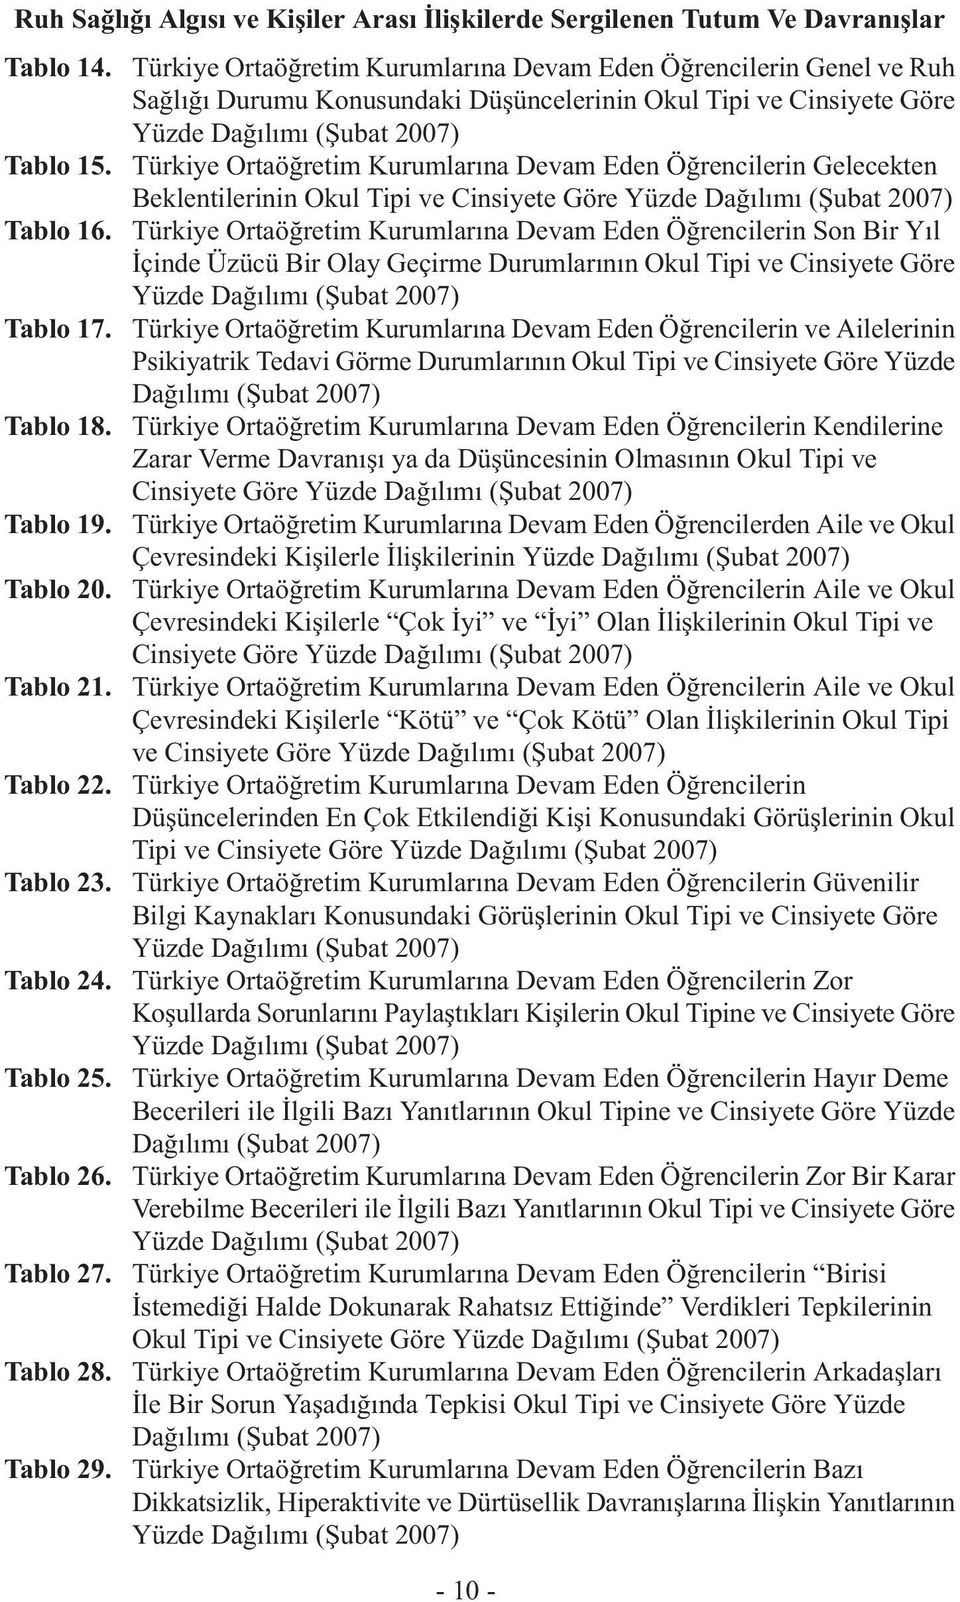 Türkiye Ortaöğretim Kurumlarına Devam Eden Öğrencilerin Gelecekten Beklentilerinin Okul Tipi ve Cinsiyete Göre Yüzde Dağılımı (Şubat 2007) Tablo 16.